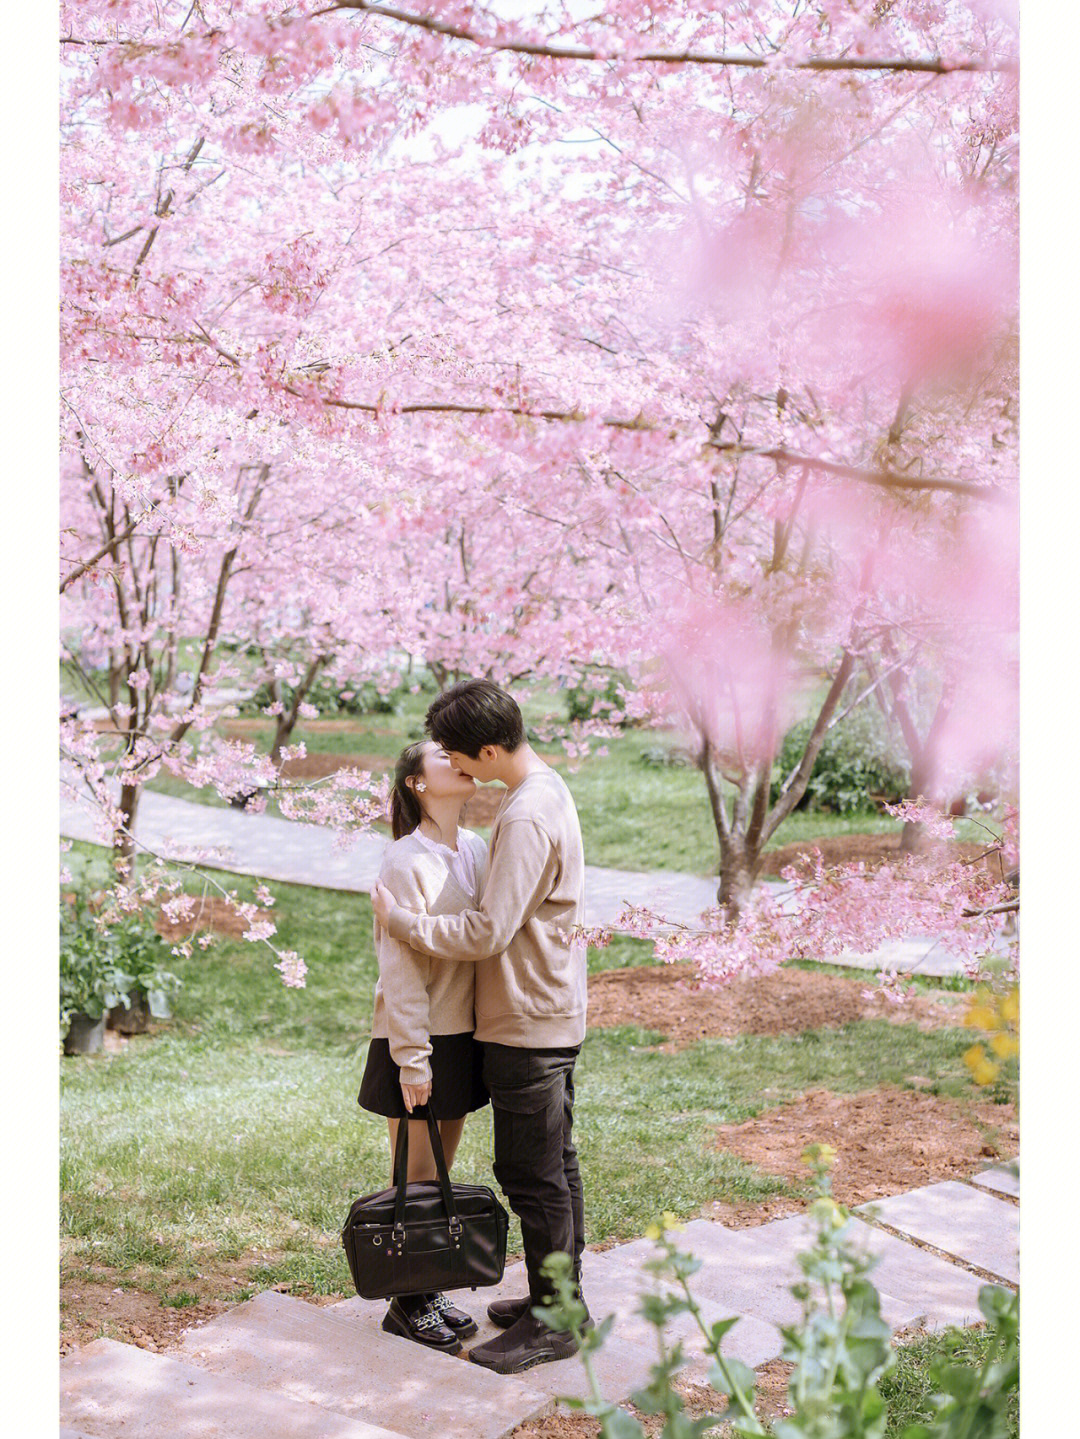 樱花树下牵手情侣图图片